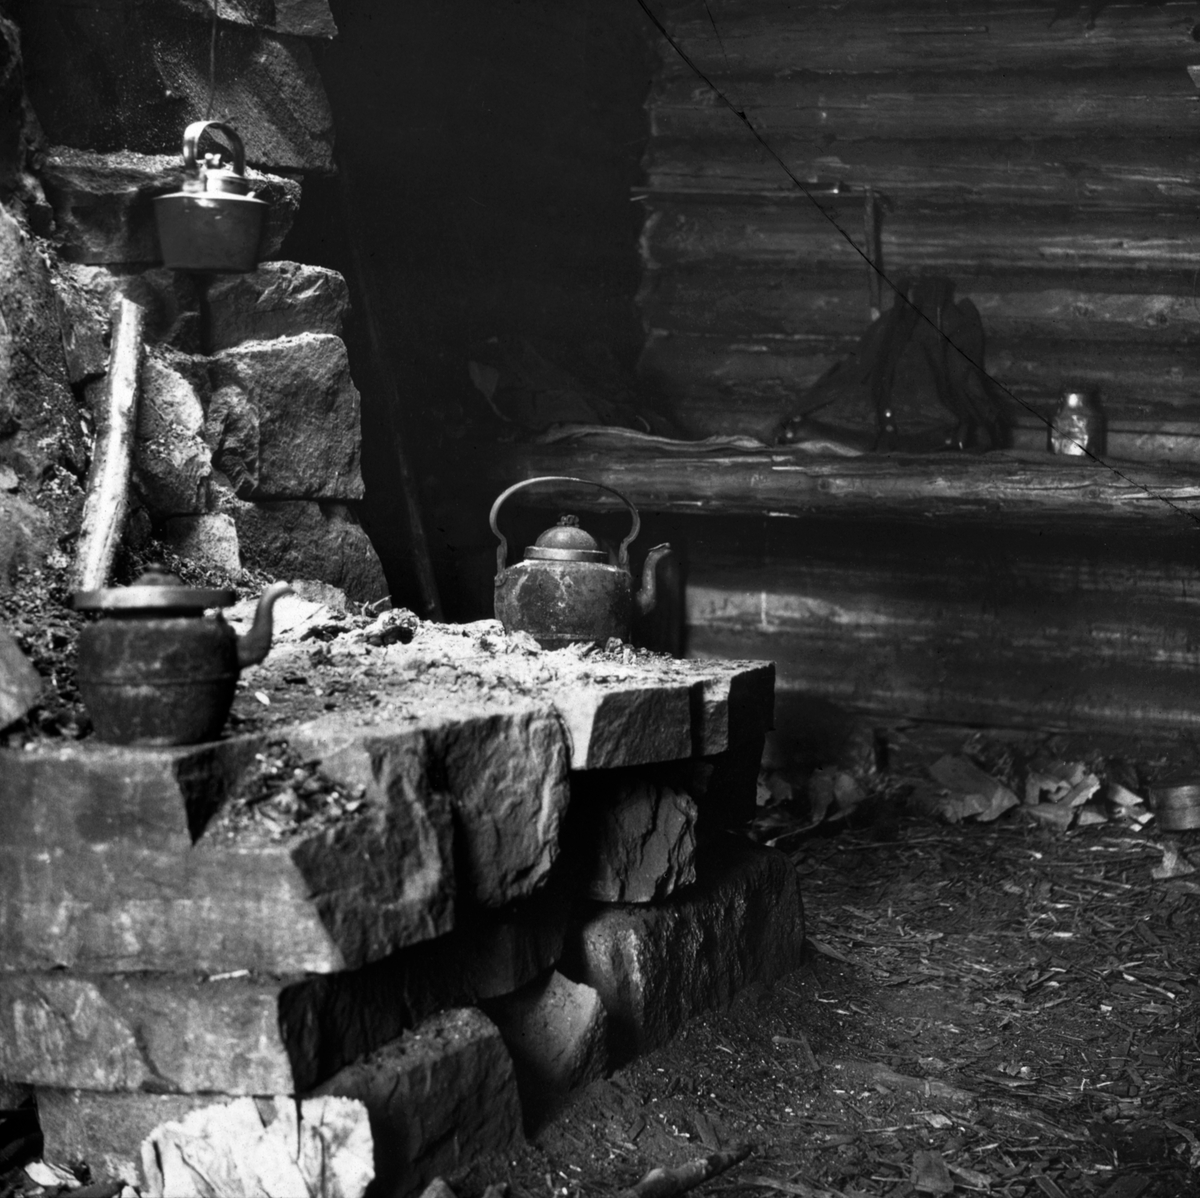 Interiør fra såkalt «murkoie» eller «peiskoie». Fotografiet er antakelig tatt i Hedmark eller Oppland i andre halvdel av 1920-åra. I forgrunnen til venstre ser vi det innredningselementet som var opphavet til de nevnte koietypebetegnelsene - en peis. Skogskoiene lå gjerne uvegsomt til i skogslandskapet, og de ble følgelig i hovedsak bygd av materialer man kunne finne på stedet, eller i hvert fall i nærheten av koietomta. Dette bildet er tatt i ei lita laftet stue, antakelig oppført av tømmer fra tørrgran eller annet virke som hadde liten kommersiell verdi. Inne i rommet var det sitte- og liggebrisker langs veggene, også her med rundtømmer som bærende elementer, men sannsynligvis med halvkløvninger eller bord i den flata skogsarbeiderne skulle sitte og sove på. Her sto det bare en bæremeis og ei lita blikkflaske på brisken. Peisen var oppført av kantete naturstein, antakelig med et minimum av bindemiddel. Den later til å være murt inntil en av tømmerveggene, og murverket skjermet i hvert fall veggen for ildsfarlige gnister. Den hadde dessuten et pipeløp som, i hvert fall når været var noenlunde vindstille, ledet mesteparten av røyken ut av rommet. Men mye av varmeenergien fra den brennende veden gikk også rett opp gjennom pipa - varmestrålinga inn i rommet var beskjeden. I det koierommet der dette fotografiet er tatt målte Sønnik Andersen likevel 32 grader 1,5 meter over jordgolvet tidlig på kvelden, mens karene lagde seg dagens varme måltid på peisen - etter tur. Samtidig var det bare 2 varmegrader 10 centimeter over golvet. Påfølgende morgen hadde romtemperaturen sunket til 14 grader, og nede ved golvet var temperaturen på frysepunktet. Dette forklares slik: «Her er peis. Den lave temperatur ved gulvet kommer meget av det. For at peisen skal trekke er det gjort hull under nederste kvarv i veggen. Døren er gissen omkring karmene og her er jordgulv. Alder 10 år.»

I peisen vi ser på dette bildet var det ikke mindre enn tre kaffekjeler. To av dem stå ytterst på den såla der ilden skulle tennes, den tredje hang i en ståltråd høyere oppe, der varmestrålinga var på det kraftigste. Johan Sønnik Andersens far, fylkeslege Einar Andersen (1864-1954), skrev en epilog til sønnen Sønnik Andersens «Undersøkelse av skogshytter og skogsarbeidernes levevilkår». Fylkeslegens tekstsekvens handlet om skogsarbeidernes kosthold. Når det gjaldt kaffe fomulerte distriktslegen seg balnt annet slik: «Om vinteren er det ikke lyst nok til å arbeide i skogen lenger enn fra 7 ½ fm. til kl. 5 em. De må utnytte arbeidstiden og får ikke tid til å få sig ordentlig kokemat før dagsarbeidet er endt. Hele arbeidsdagen lever de på kaffe og smørbrød. Når de så kommer inn kl. 5 om eftermiddagen, må de foreløpig stagge den verste sult – fremdeles med kaffe og smørbrød.» Men etter hvert lagde de seg vanligvis et varmt måltid, etter tur og etter fattig evne. Andersen føyer til denne betraktningen om kaffen: «Der drikkes svært meget kaffe i kojene – 5 ganger om dagen foruten en del ganger om natten, og visstnok store porsjoner hver gang. Det er forståelig at folk som arbeider i kulden, har trang til varmt drikke og noget å stive sig op på. Men all denne kaffen kan allikevel ikke være bra.»

Fotografiet er tatt i forbindelse med undersøkelser forstkandidat Johan Sønnik Andersen gjorde i Hedmark, Oppland og Nord-Trøndelag i andre halvdel av 1920-åra.  Observasjonene og refleksjonene hans ble utgitt under tittelen «Undersøkelse av skogshytter og skogsarbeidernes levevilkår» i 1932.  Norsk Skogmuseum har overtatt en del av de fotografiske negativene fra Sønnik Andersens undersøkelser i Hedmark, Oppland og Trøndelag.  Noen få av disse er brukt som illustrasjoner i det nevnte heftet.  De er imidlertid – antakelig for å sikre involverte skogeiere og skogsarbeidere en viss anonymitet – svært knapt tekstet fra opphavsmannens side.  Dette har naturligvis også fått konsekvenser for hvordan Norsk Skogmuseum kan registrere motivene i sin fotodatabase.